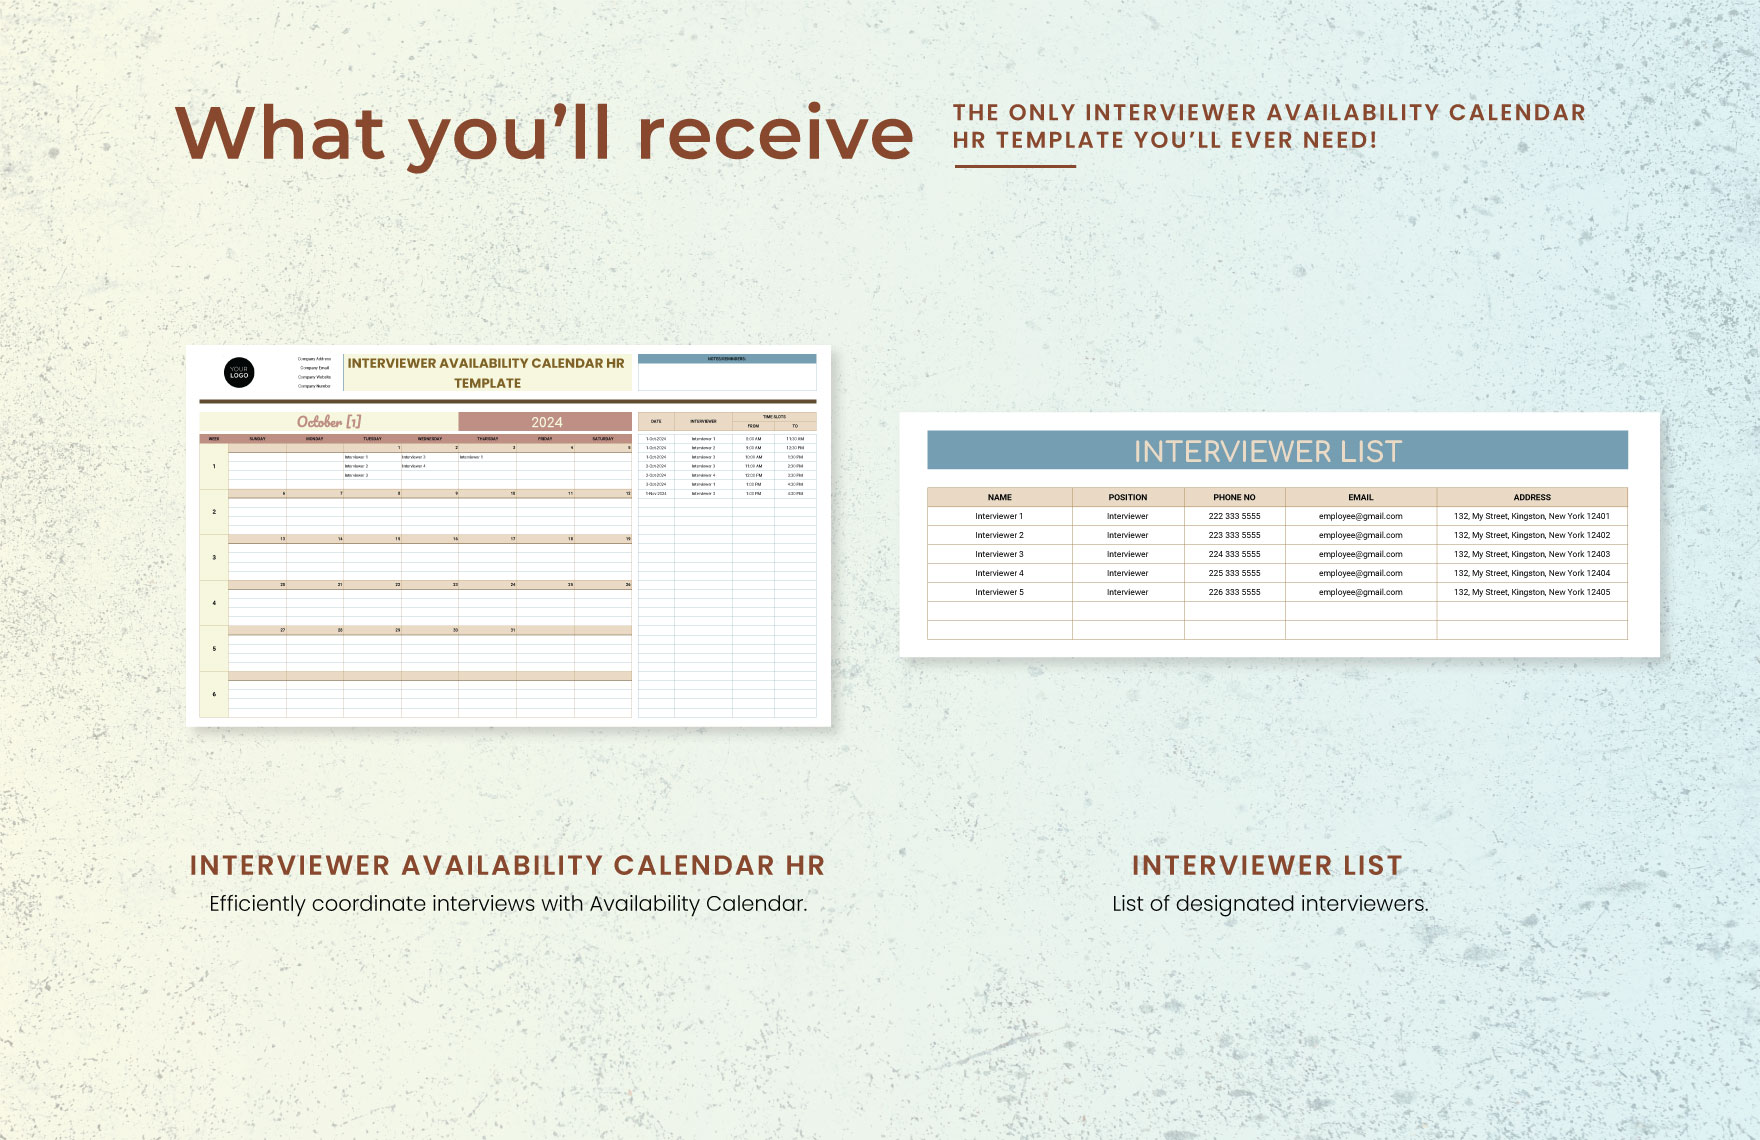 Interviewer Availability Calendar HR Template